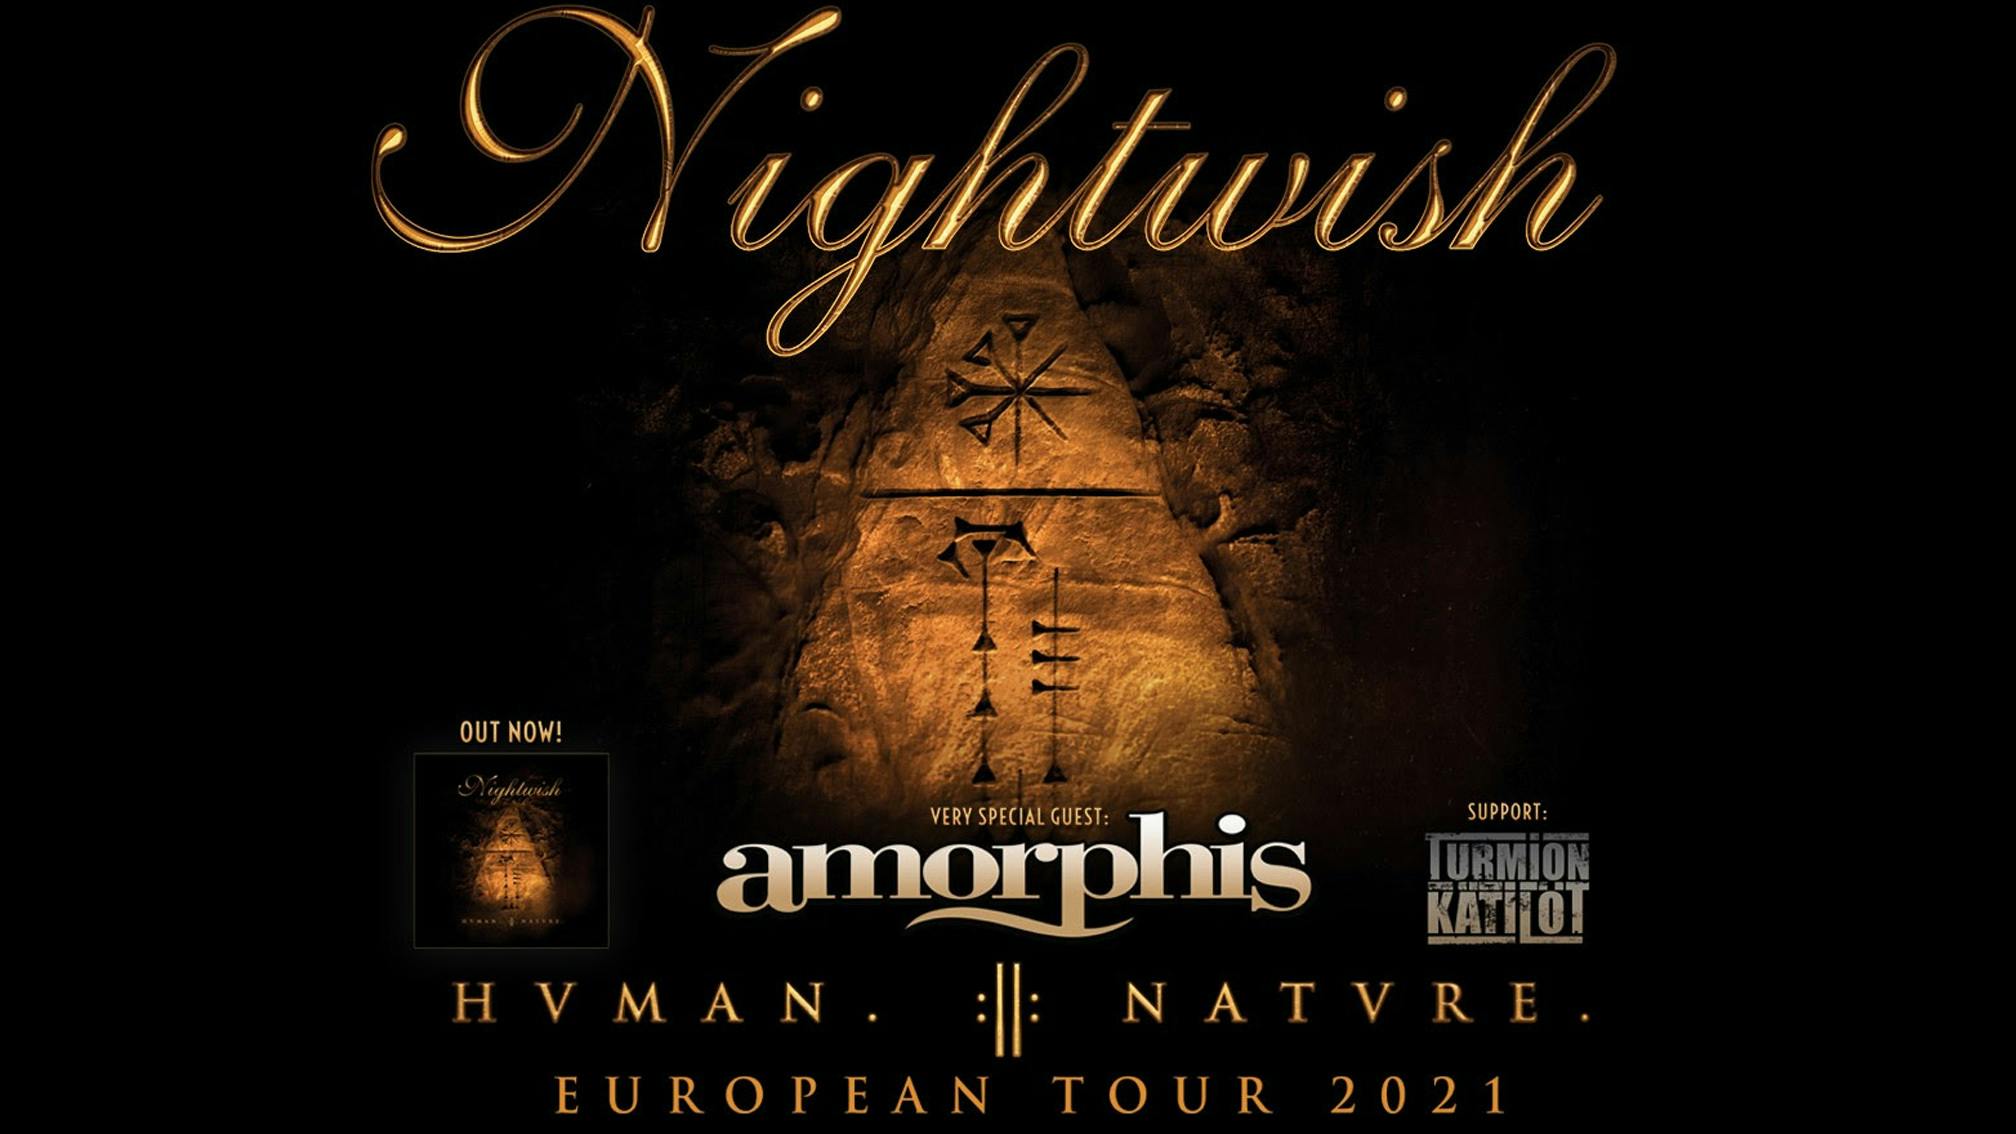 Nightwish have rescheduled their 2021 UK/European tour